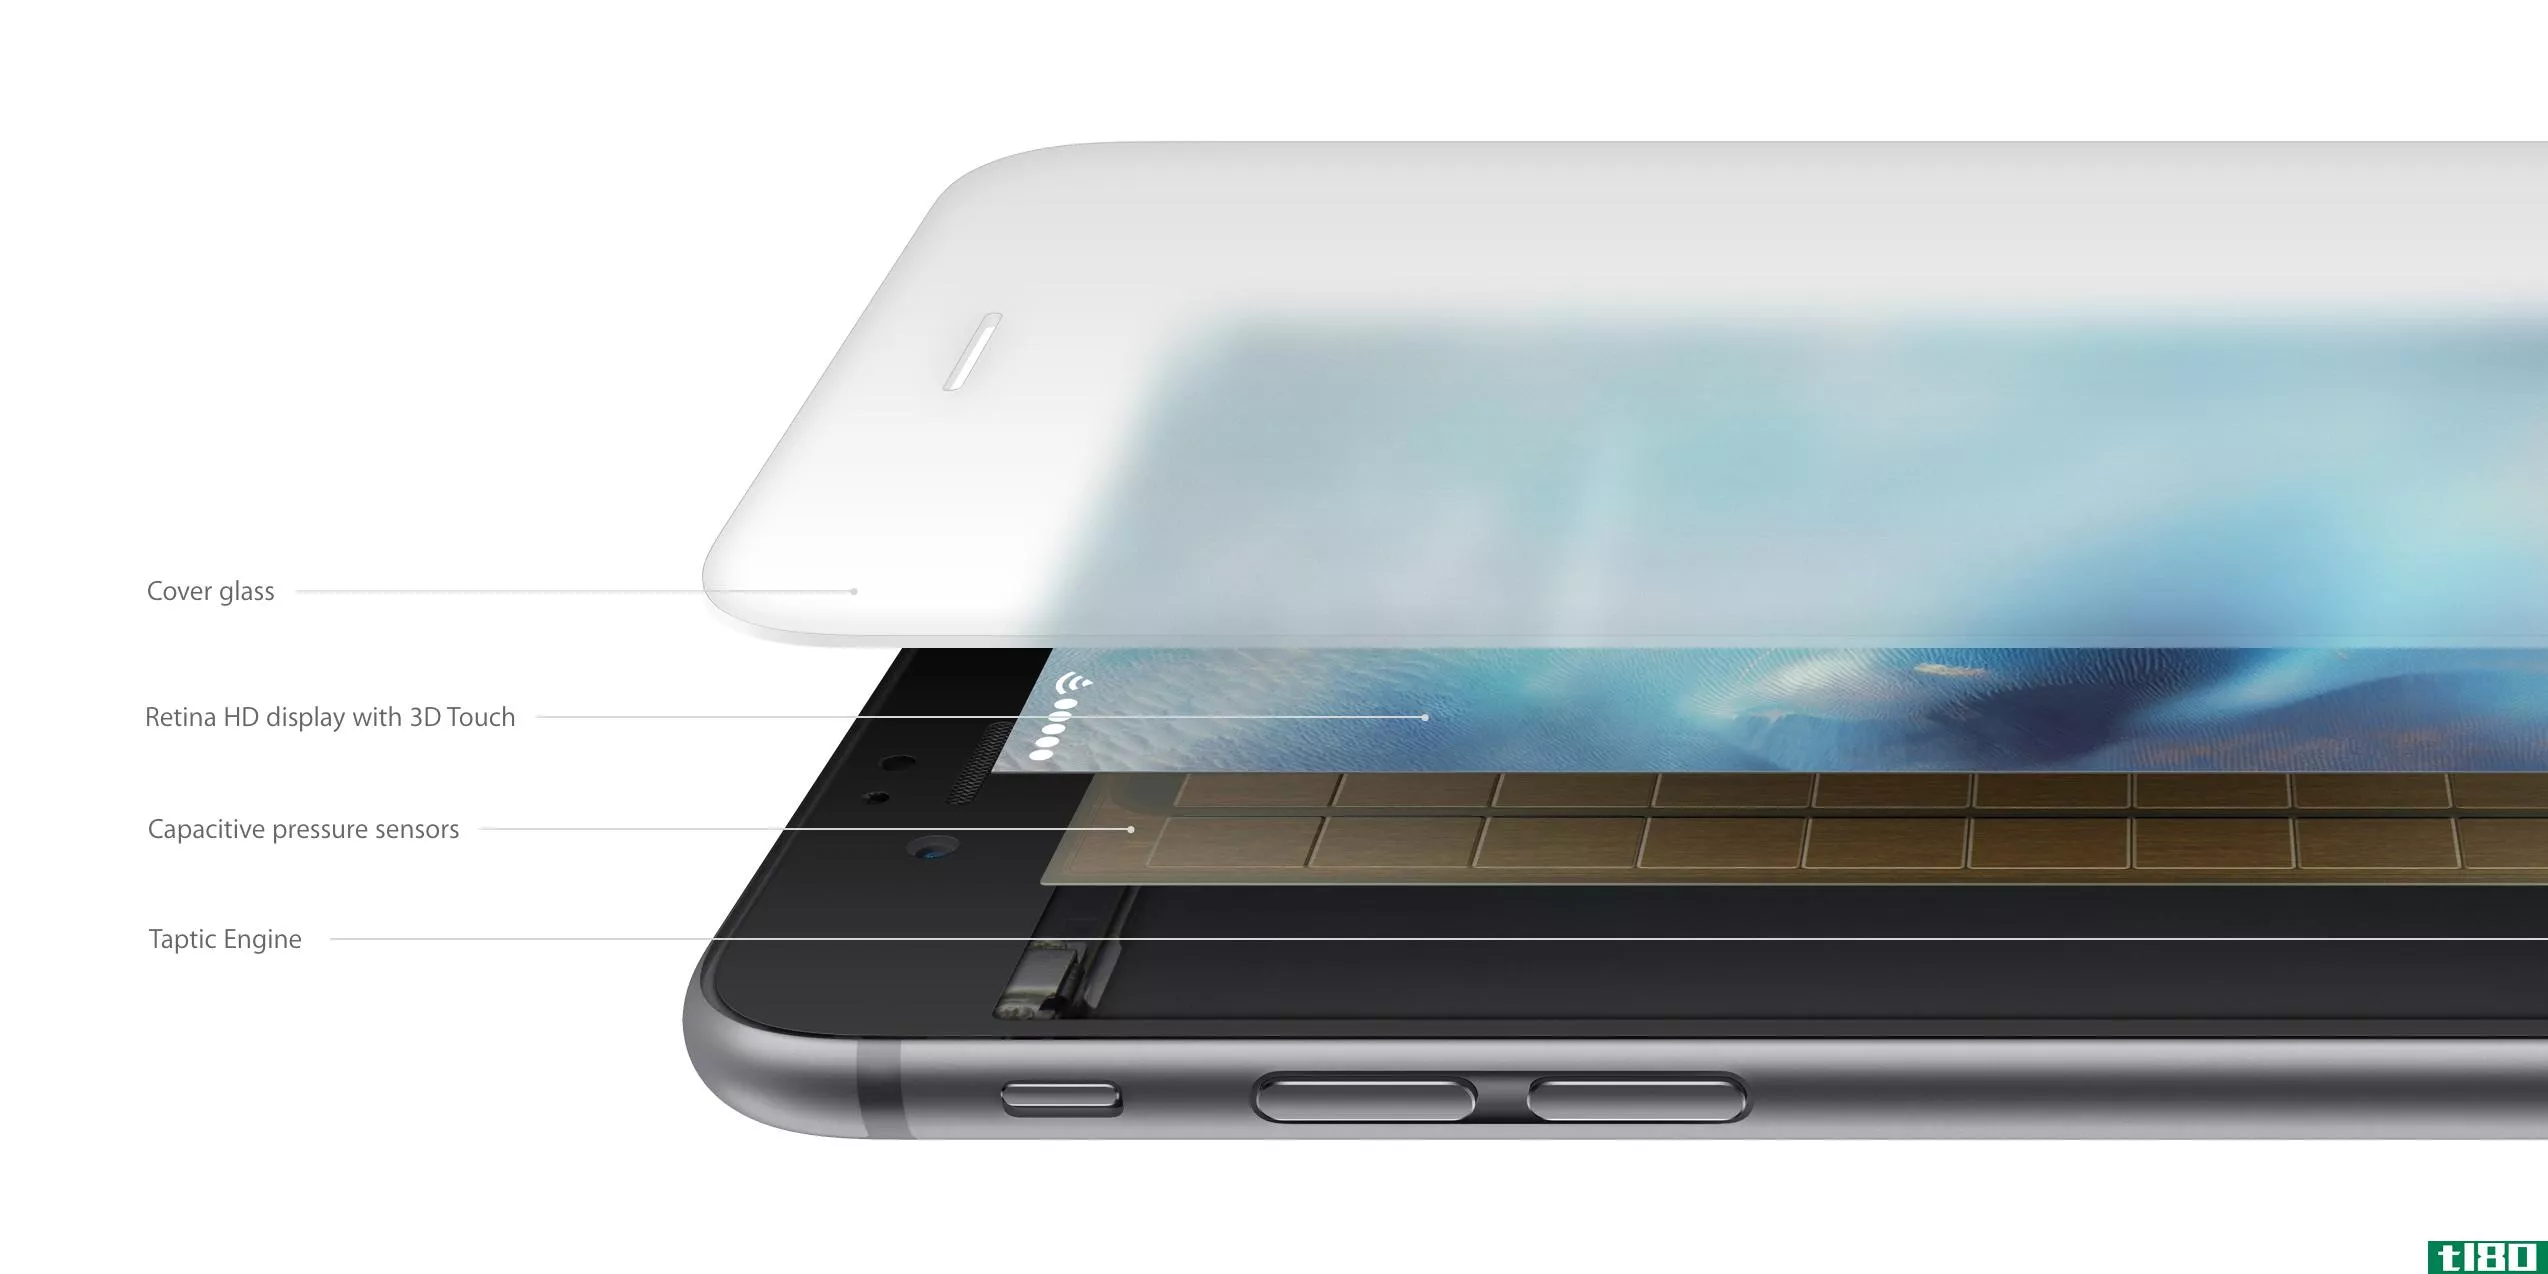 新款铝合金并非iphone6s体重增加的罪魁祸首